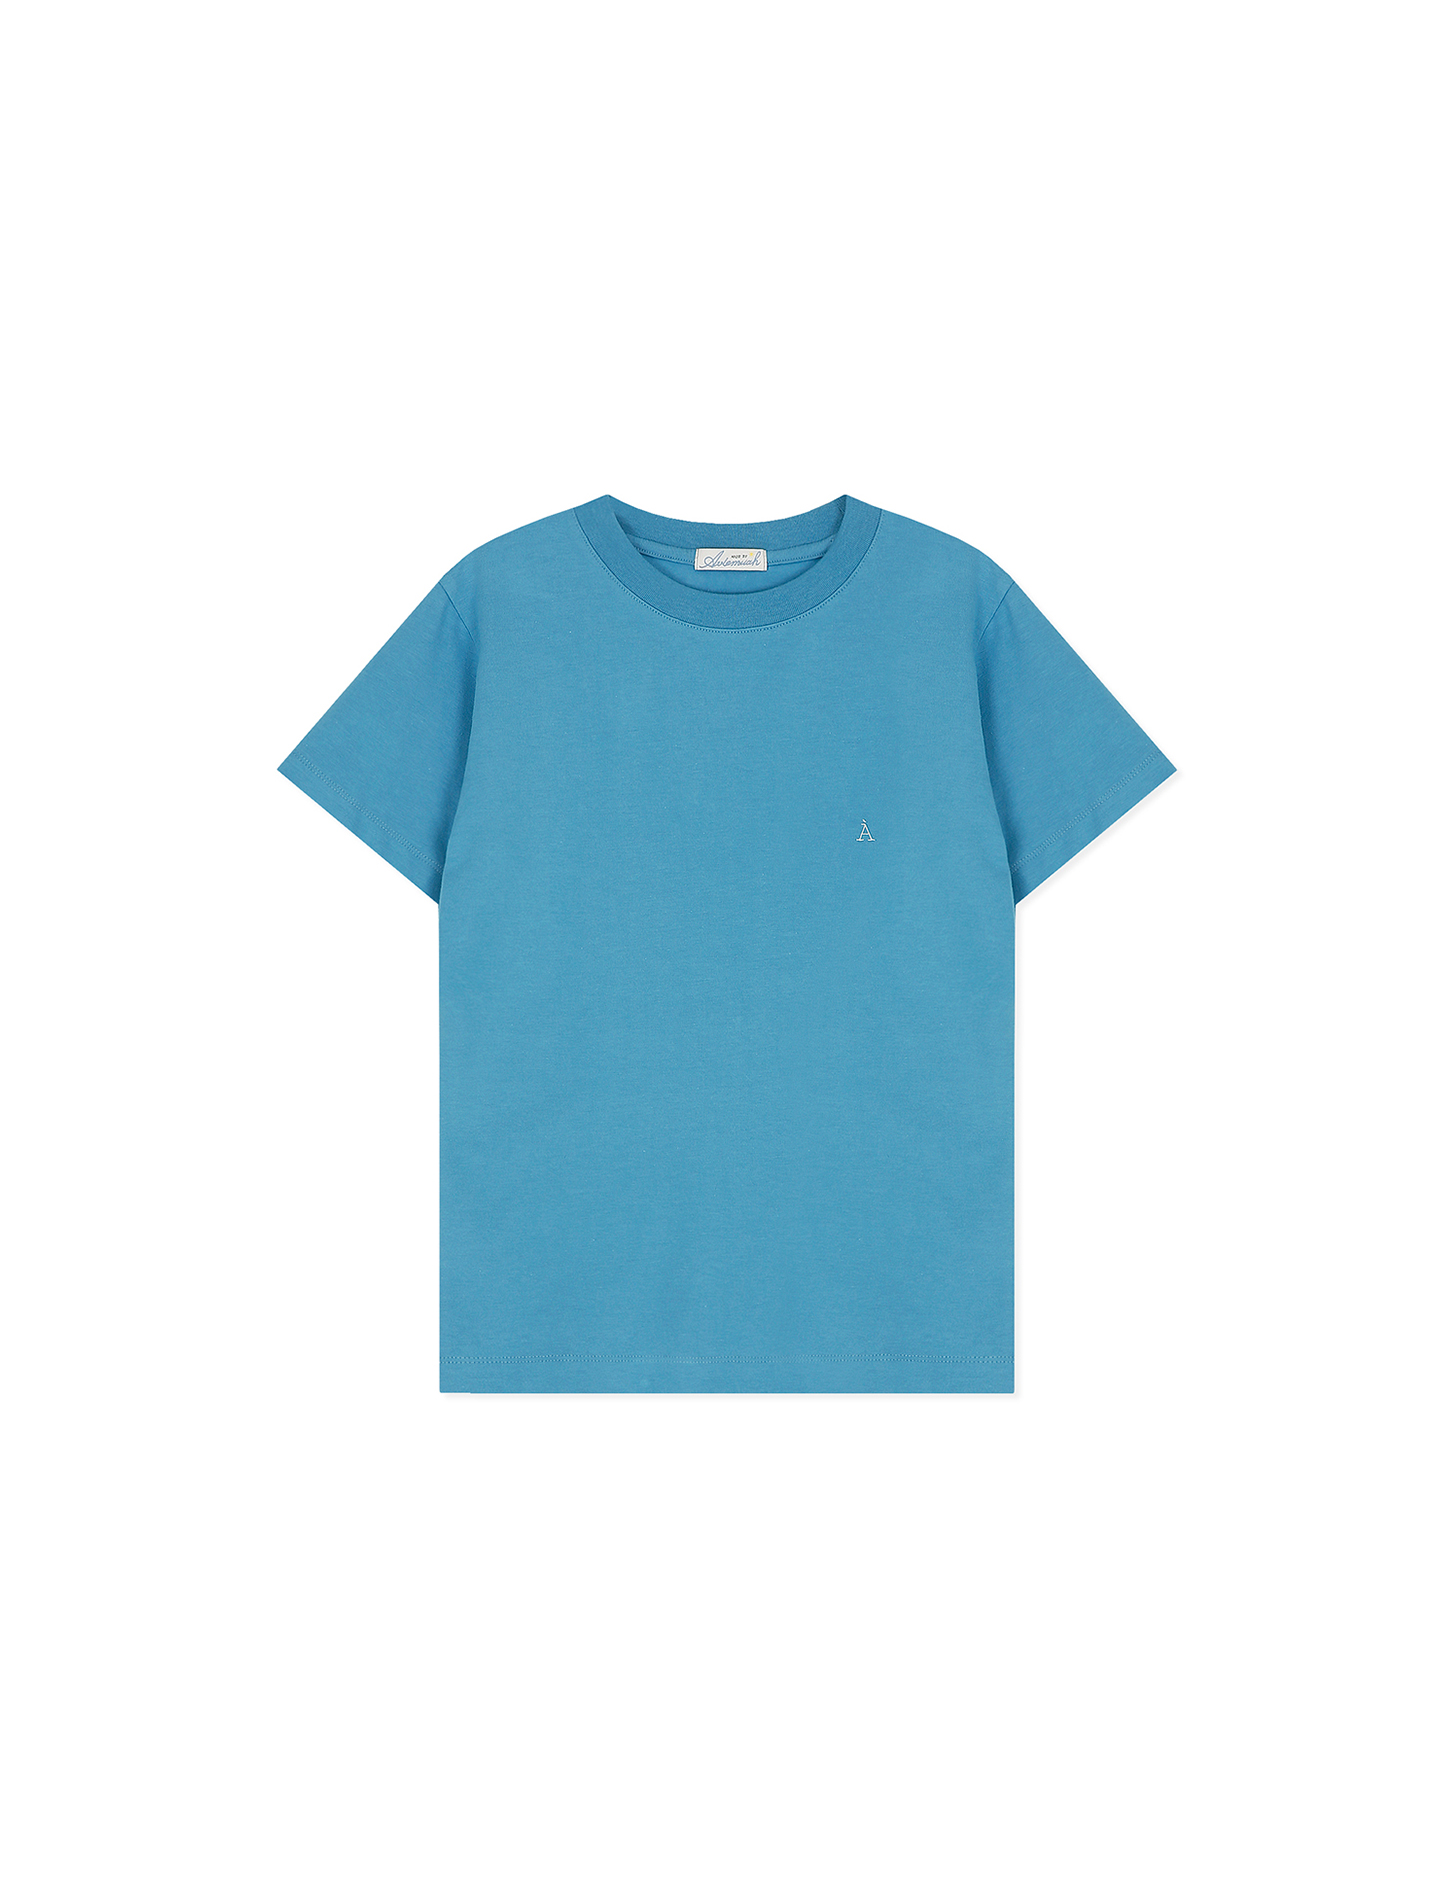 크루넥 À 로고 티셔츠 (블루)